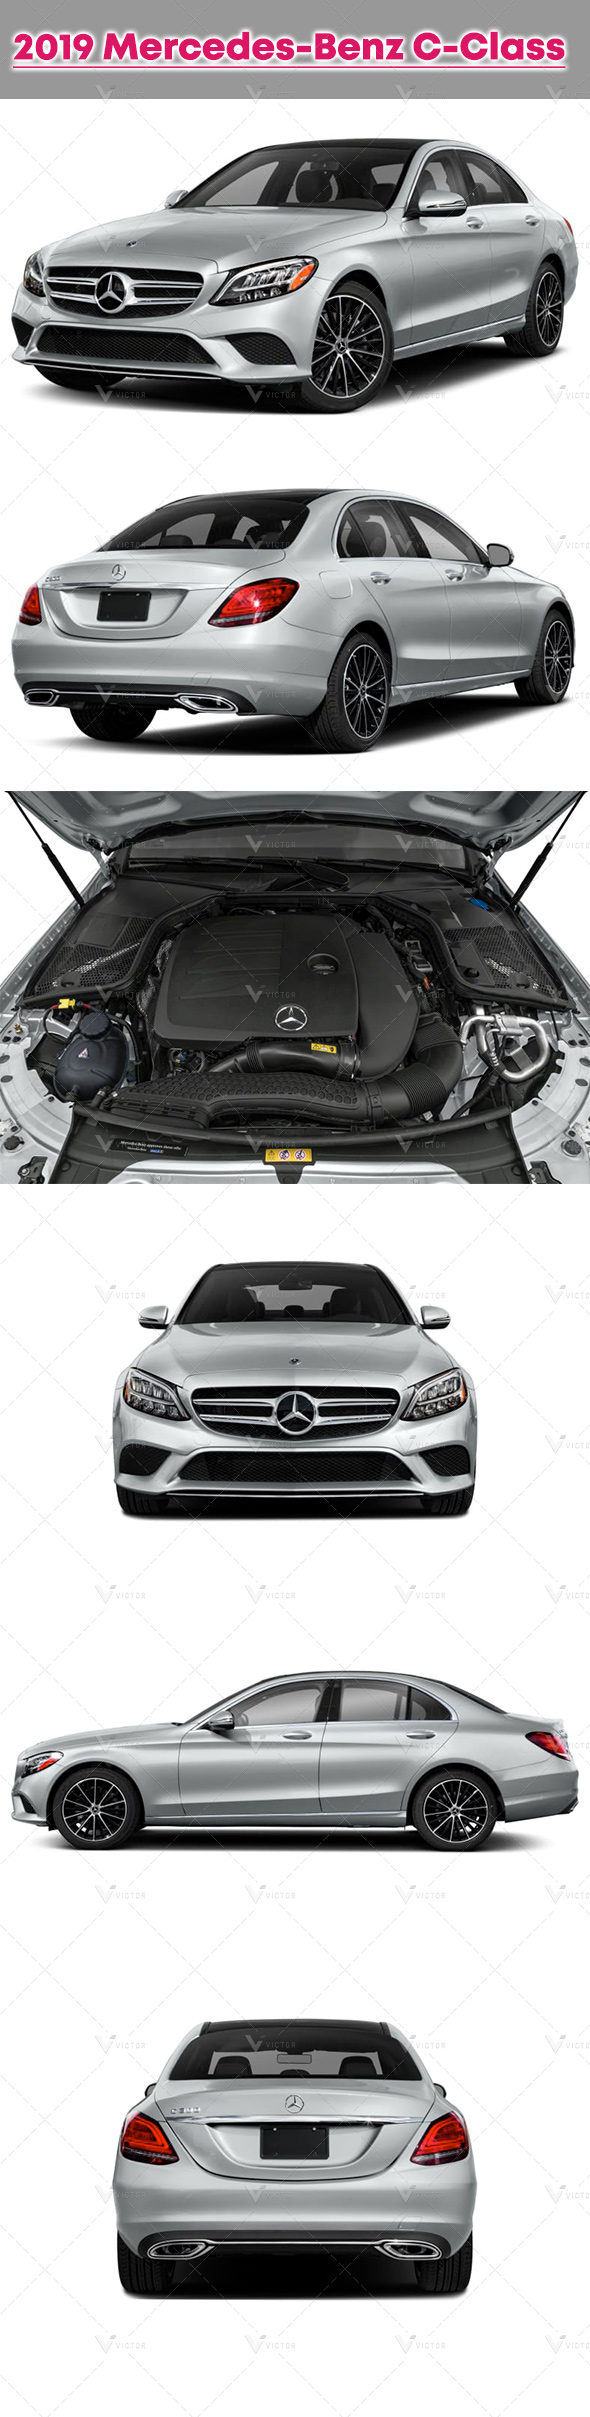 2019 Mercedes-Benz C-Class - 3Docean 31601557